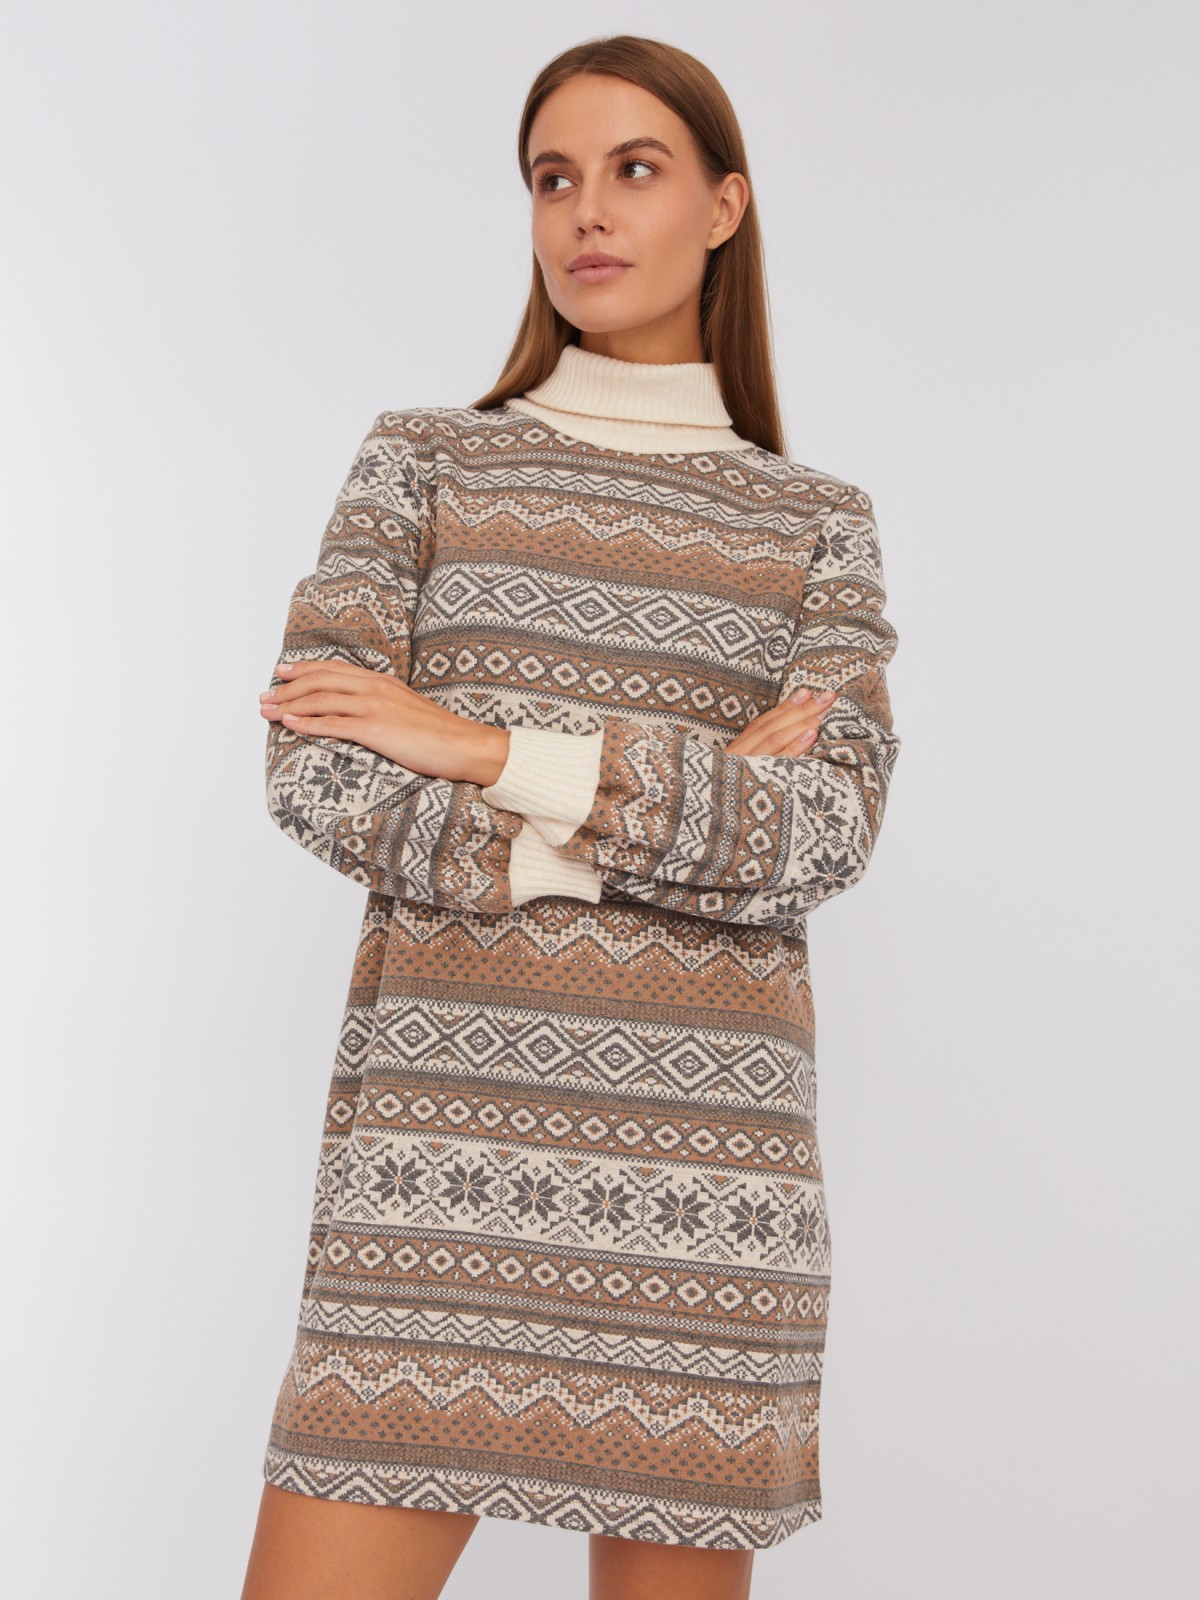 Трикотажное платье-свитер со скандинавским узором